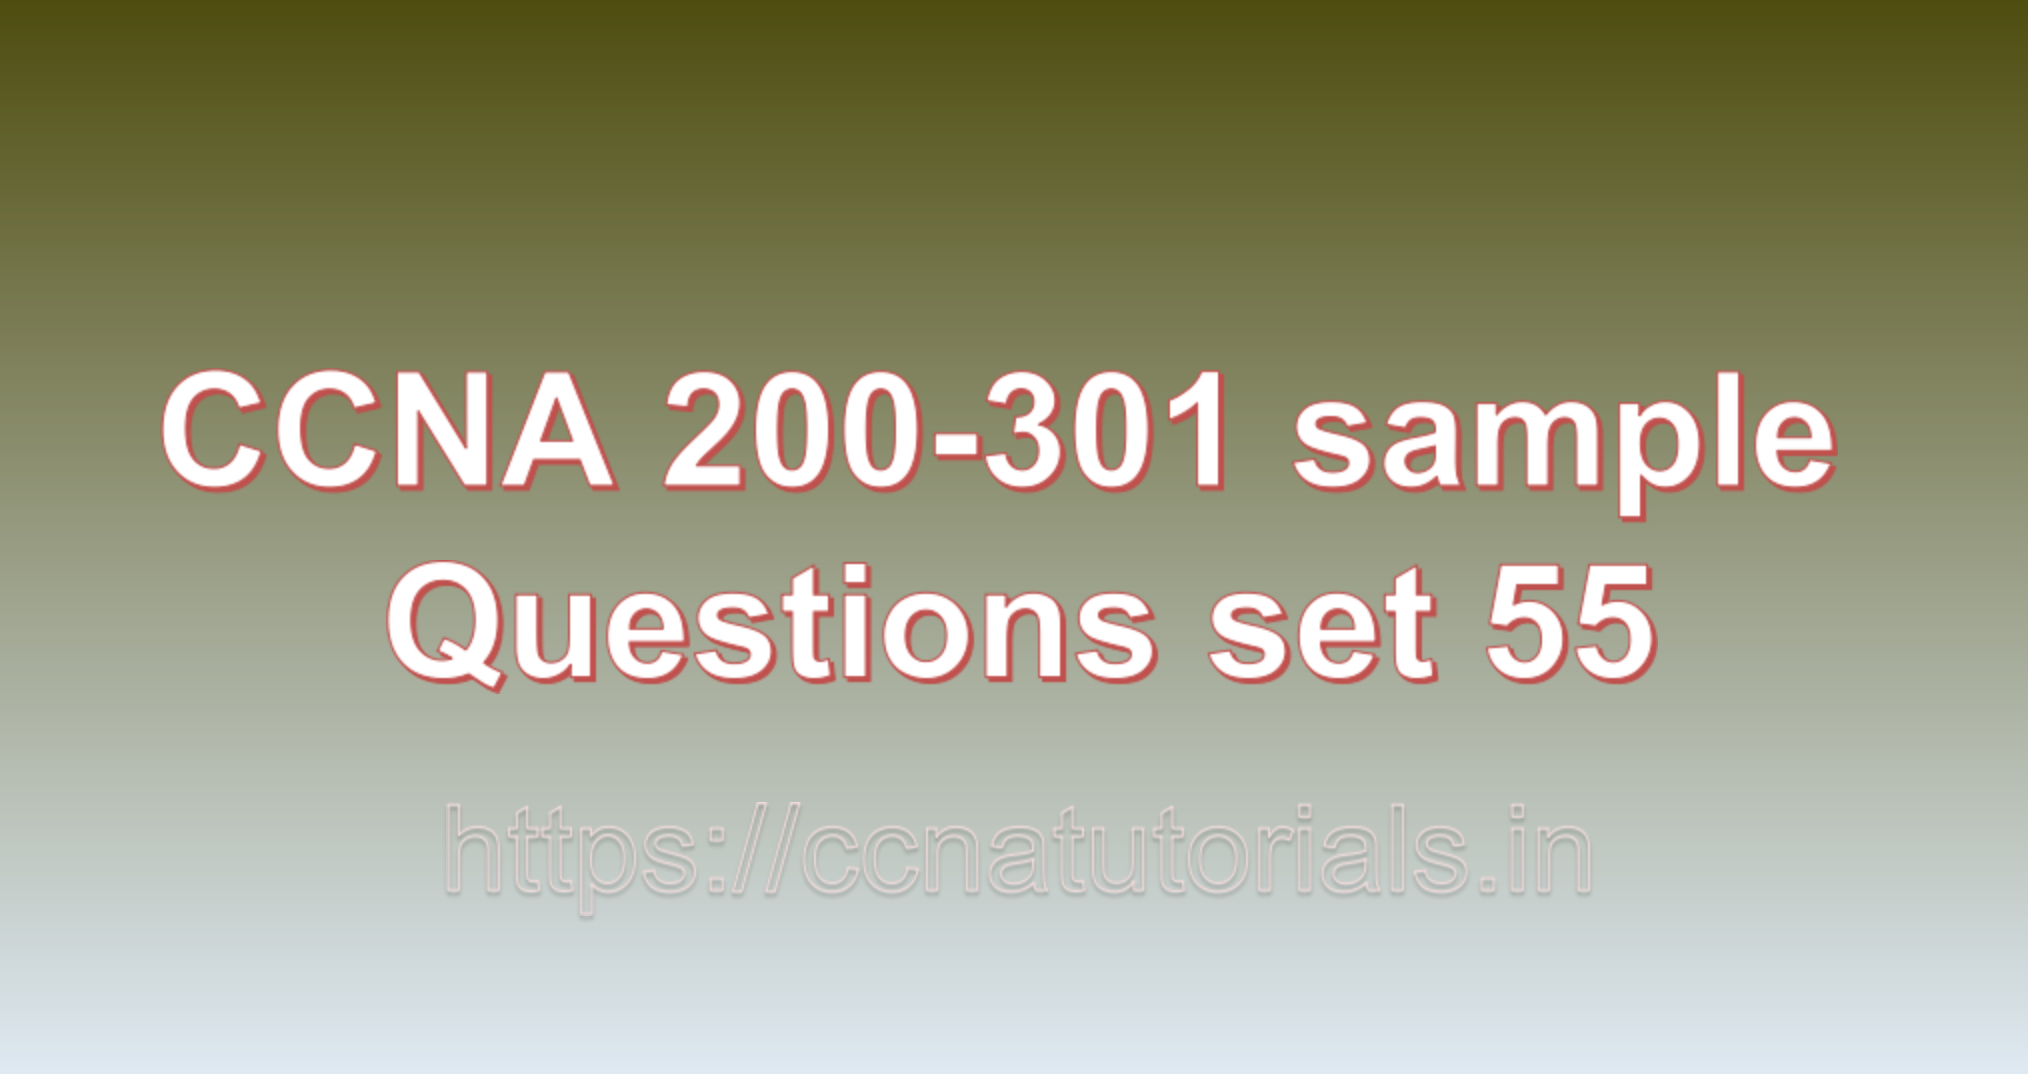 ccna sample questions set 55, ccna tutorials, CCNA Exam, ccna